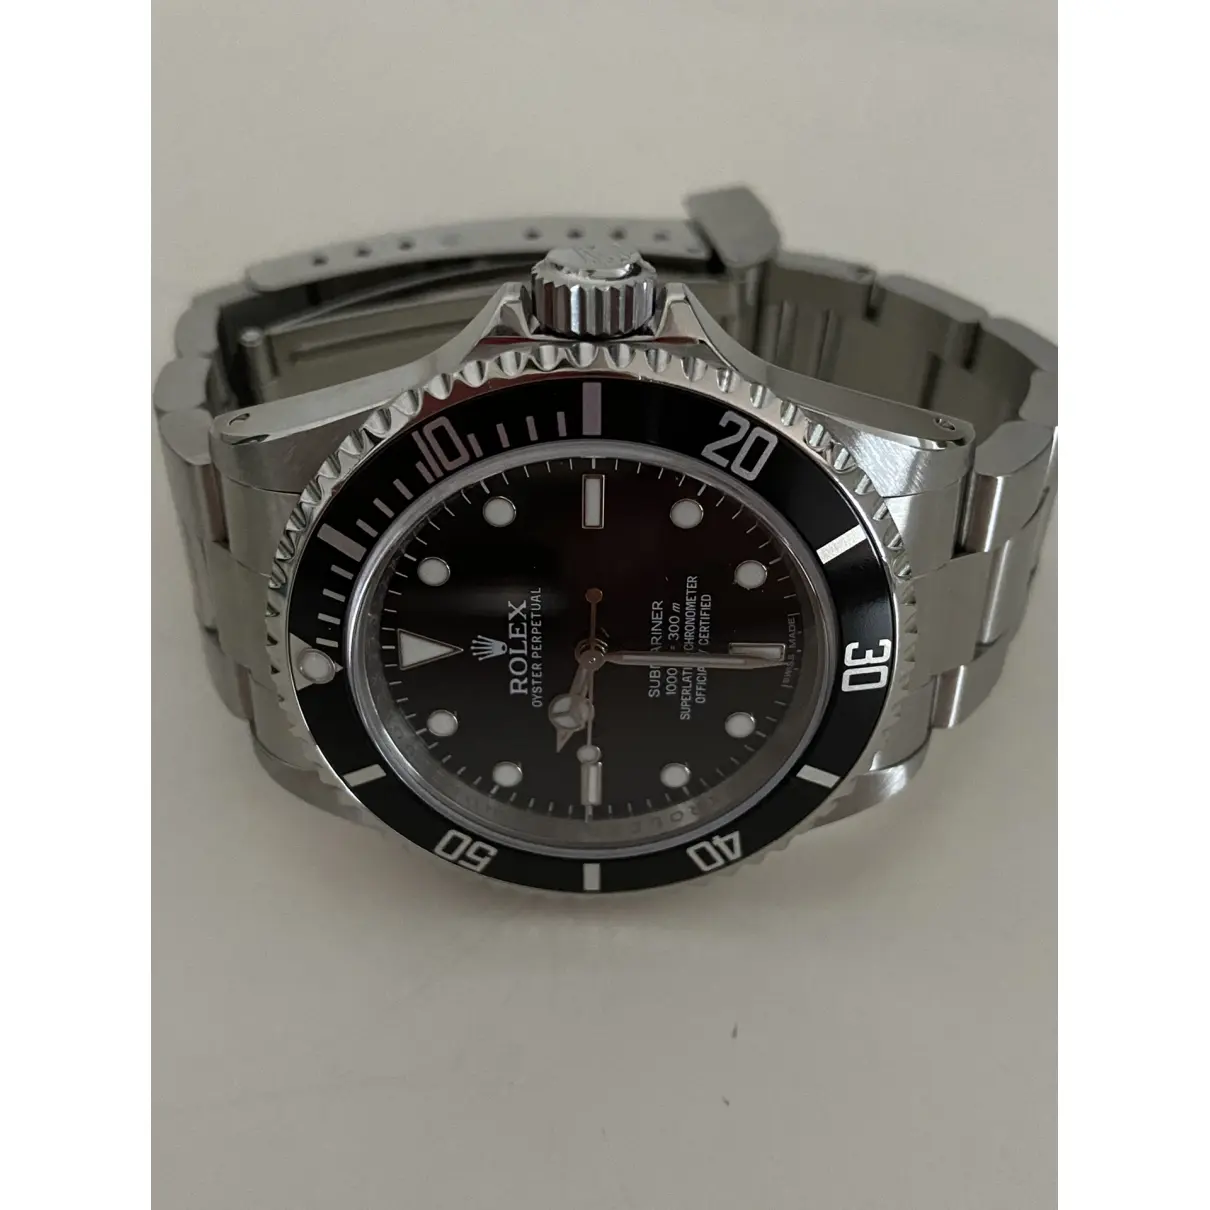 Buy Rolex Submariner watch online